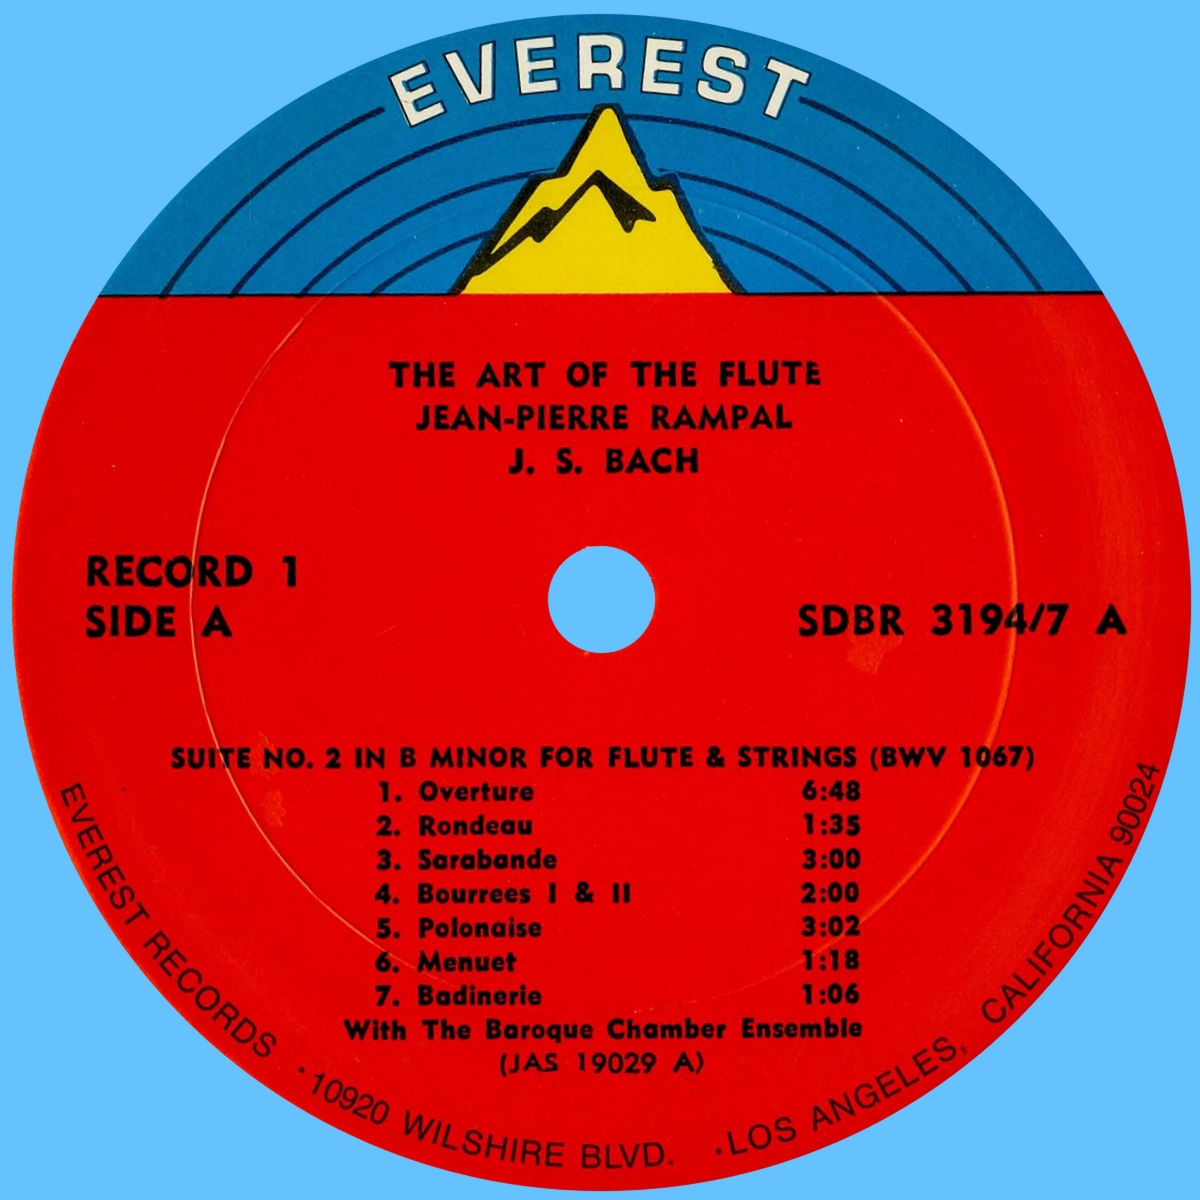 Étiquette recto du 1er disque du coffret Everest 3194-7